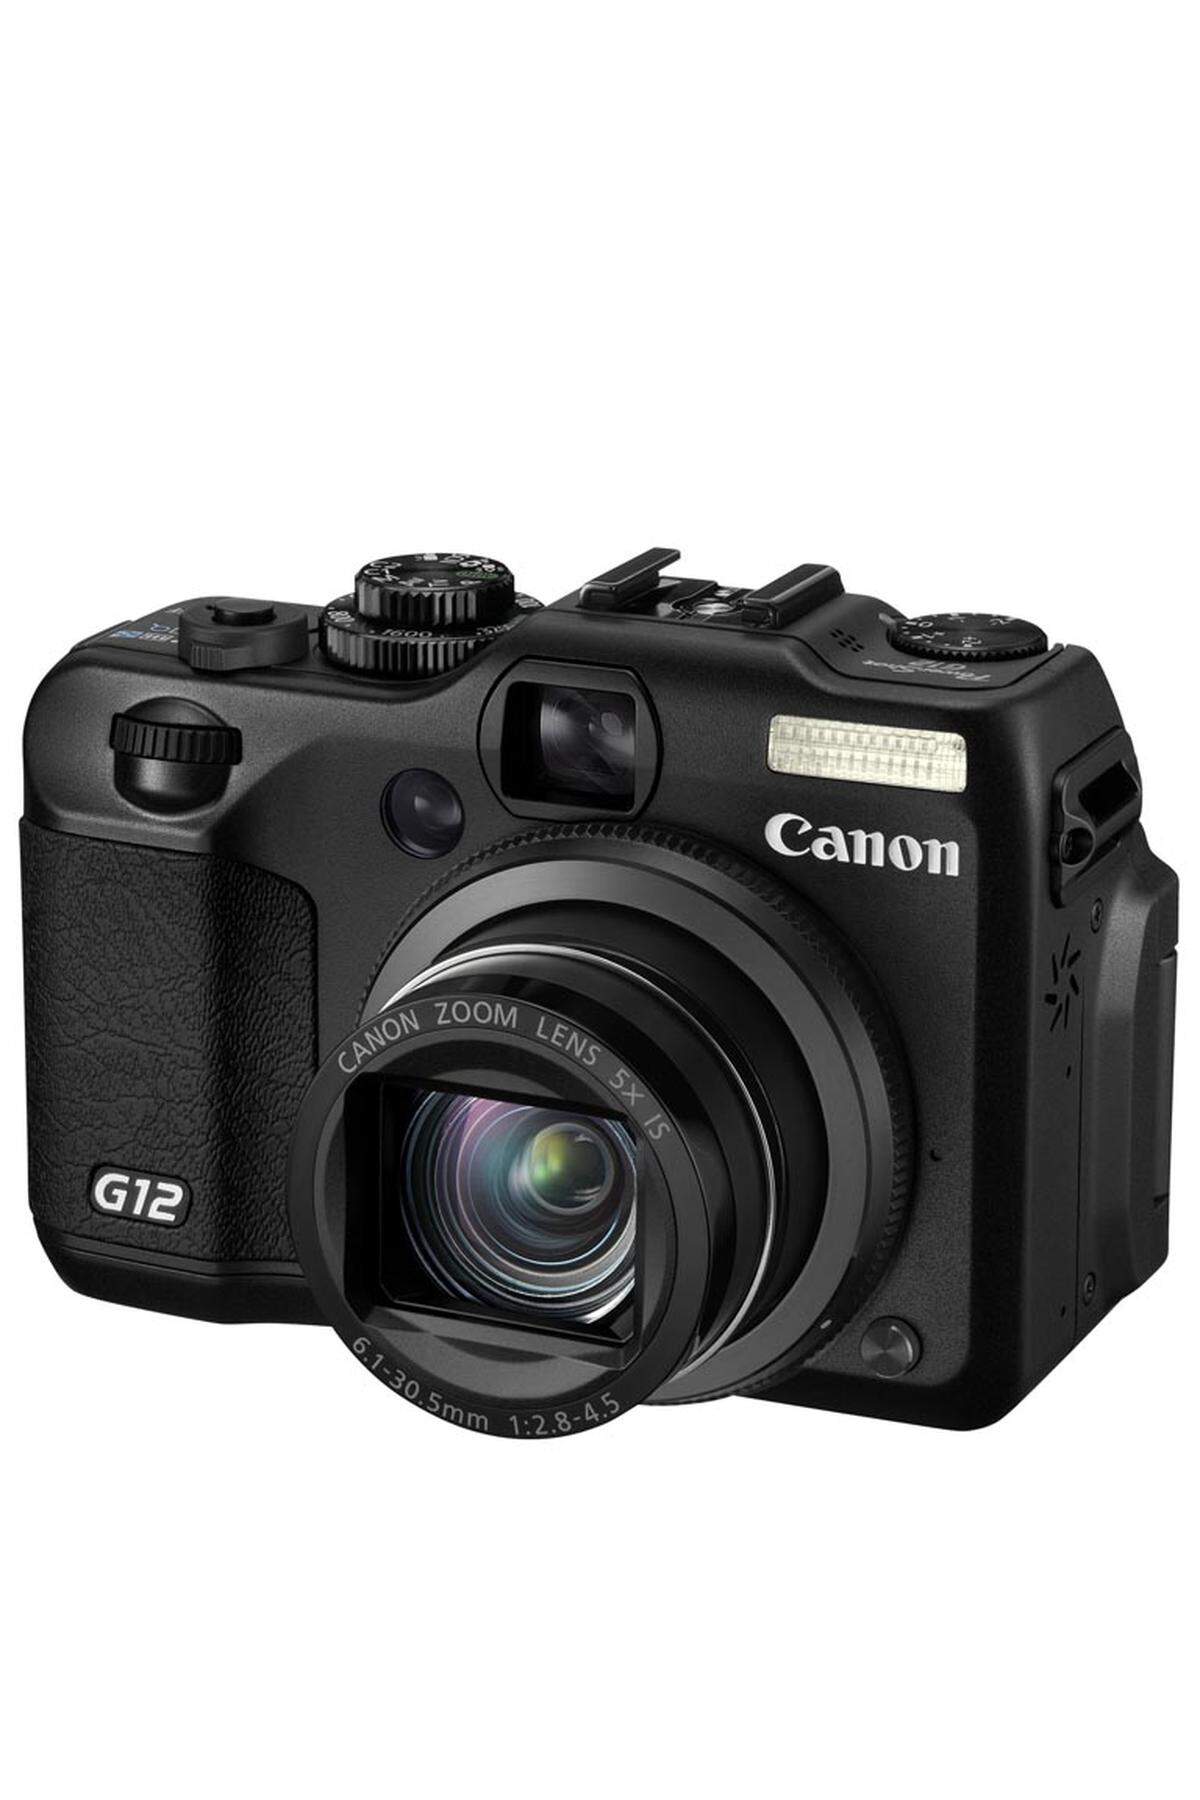 Canon PowerShot G12: Äußerlich ist die G12 eine typische Kompaktkamera, von der Leistungsfähigkeit her kann sie es aber mit so mancher Spiegelreflexkamera aufnehmen, etwa dank vieler manueller Einstellmöglichkeiten und eines Anschlusses für ein externes Blitzgerät. Der HDR-Modus errechnet aus drei schnell hintereinander geschossenen Fotos ein im Vorder- wie auch im Hintergrund perfekt belichtetes Bild; bei schlechtem Licht lässt sich die ISO-Empfindlichkeit auf den Wert 12.800 hochschrauben. Von den sonst zehn Mio. Bildpunkten stehen dann nur 2,5 Megapixel zur Verfügung. Der optische Sucher passt sich automatisch an die Brennweite an. Rund 550 Euro. www.canon.at